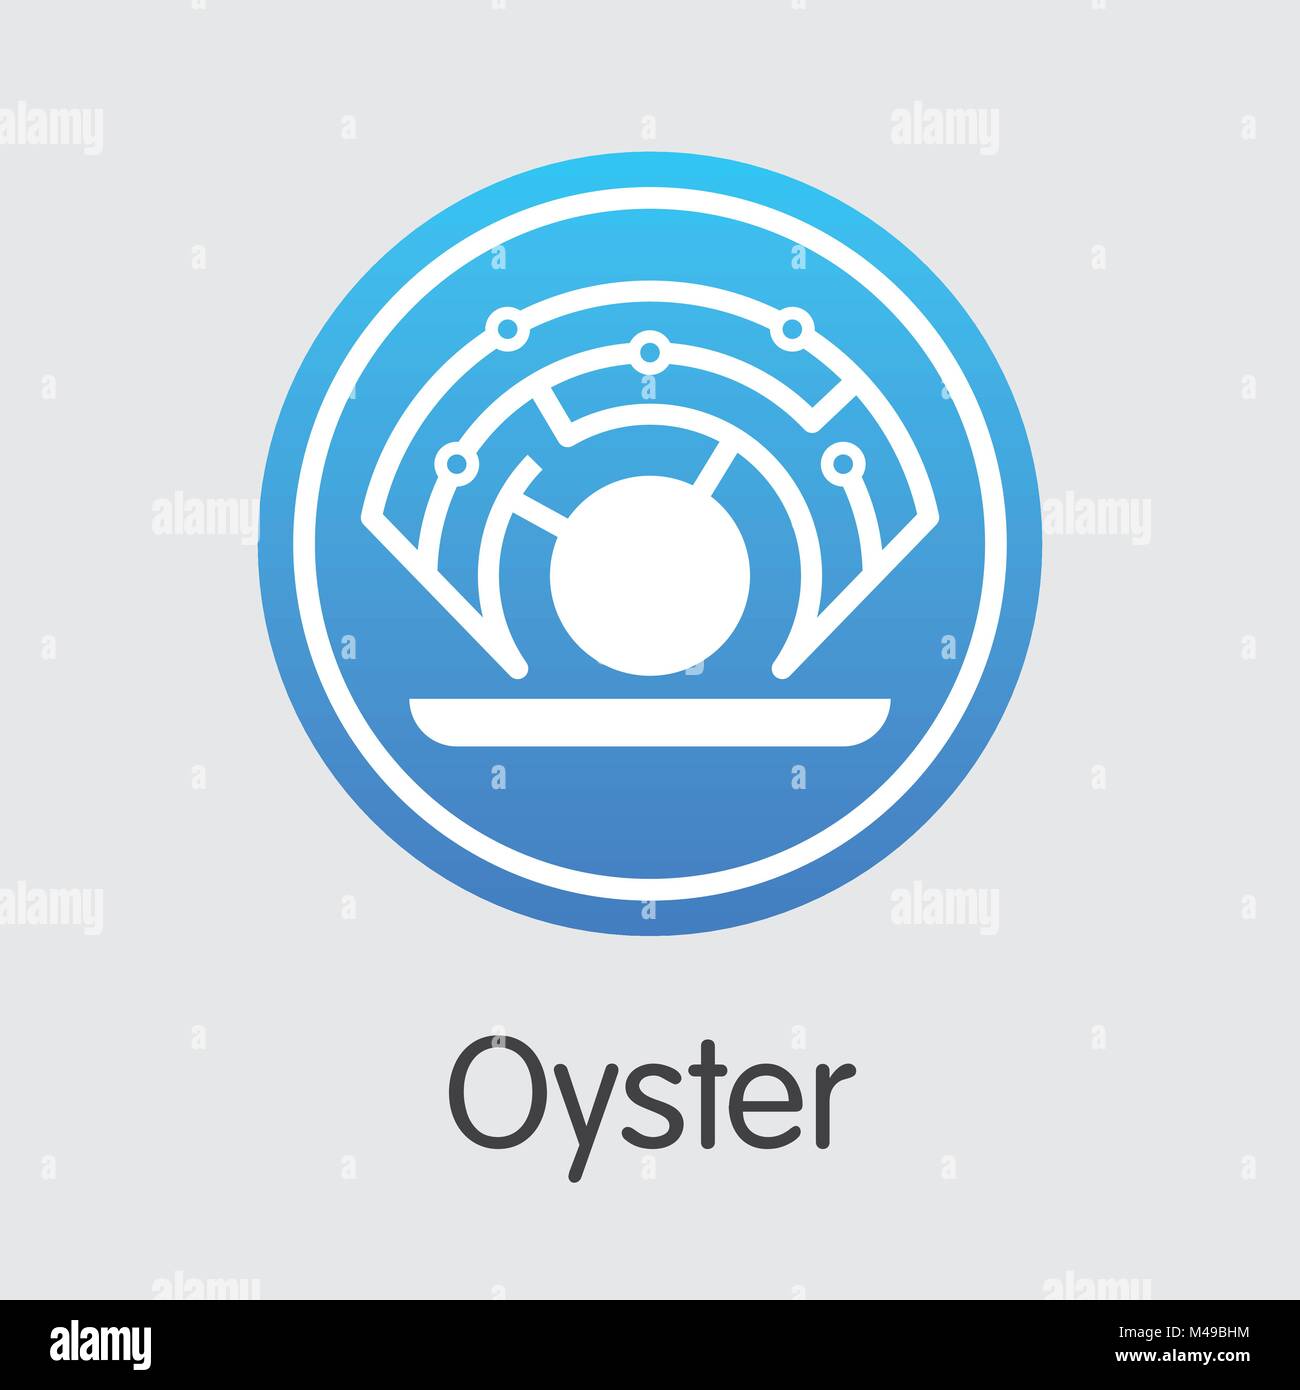 Oyster - Cryptocurrency Coin pittogramma. Illustrazione Vettoriale